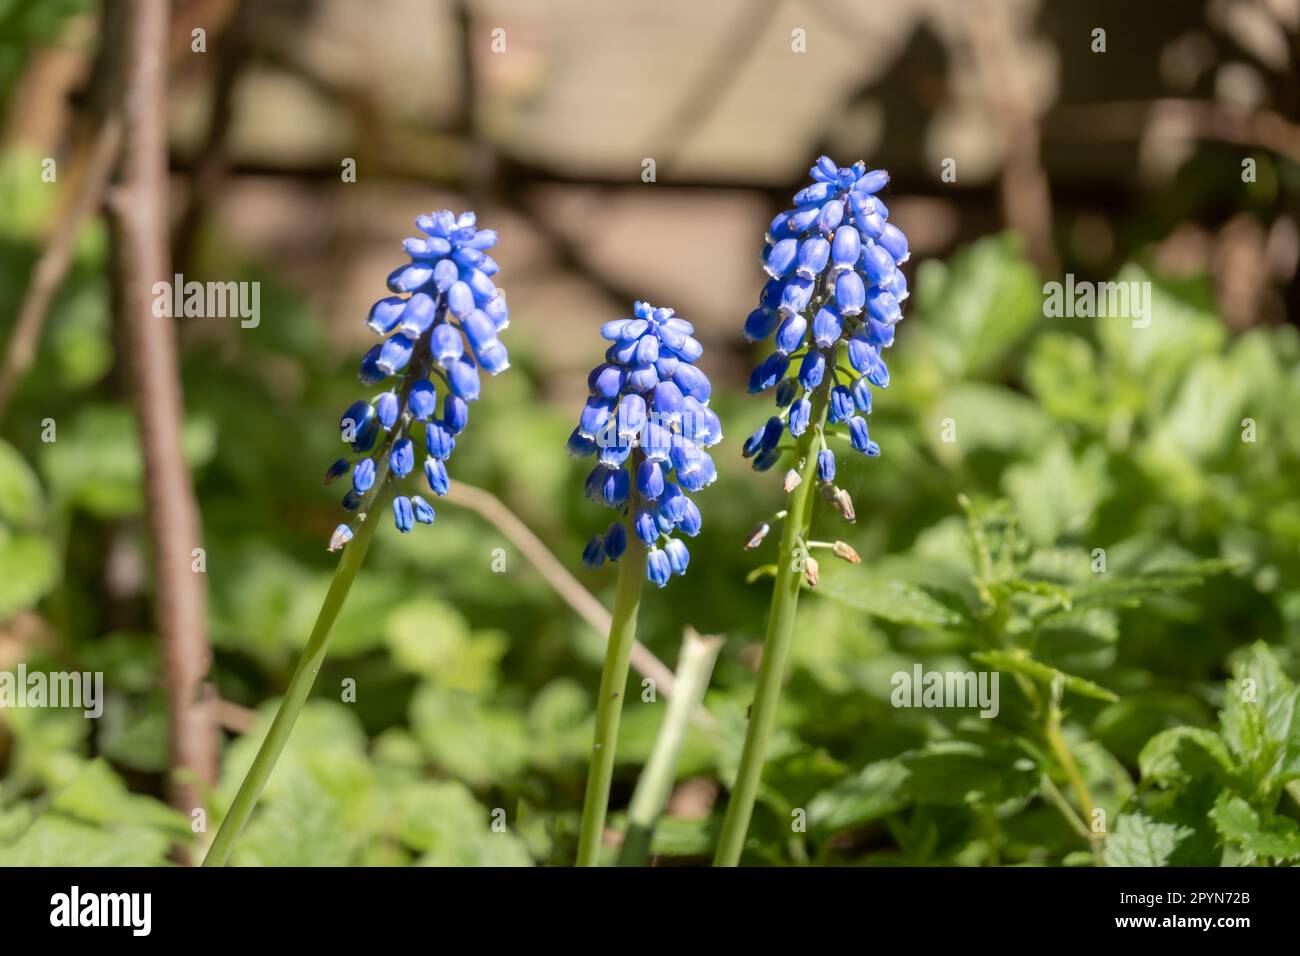 Traubenhyazinthen, Muscari botryoides, drei blaue Blüten und Stiele im Garten im Frühling, Niederlande Stockfoto